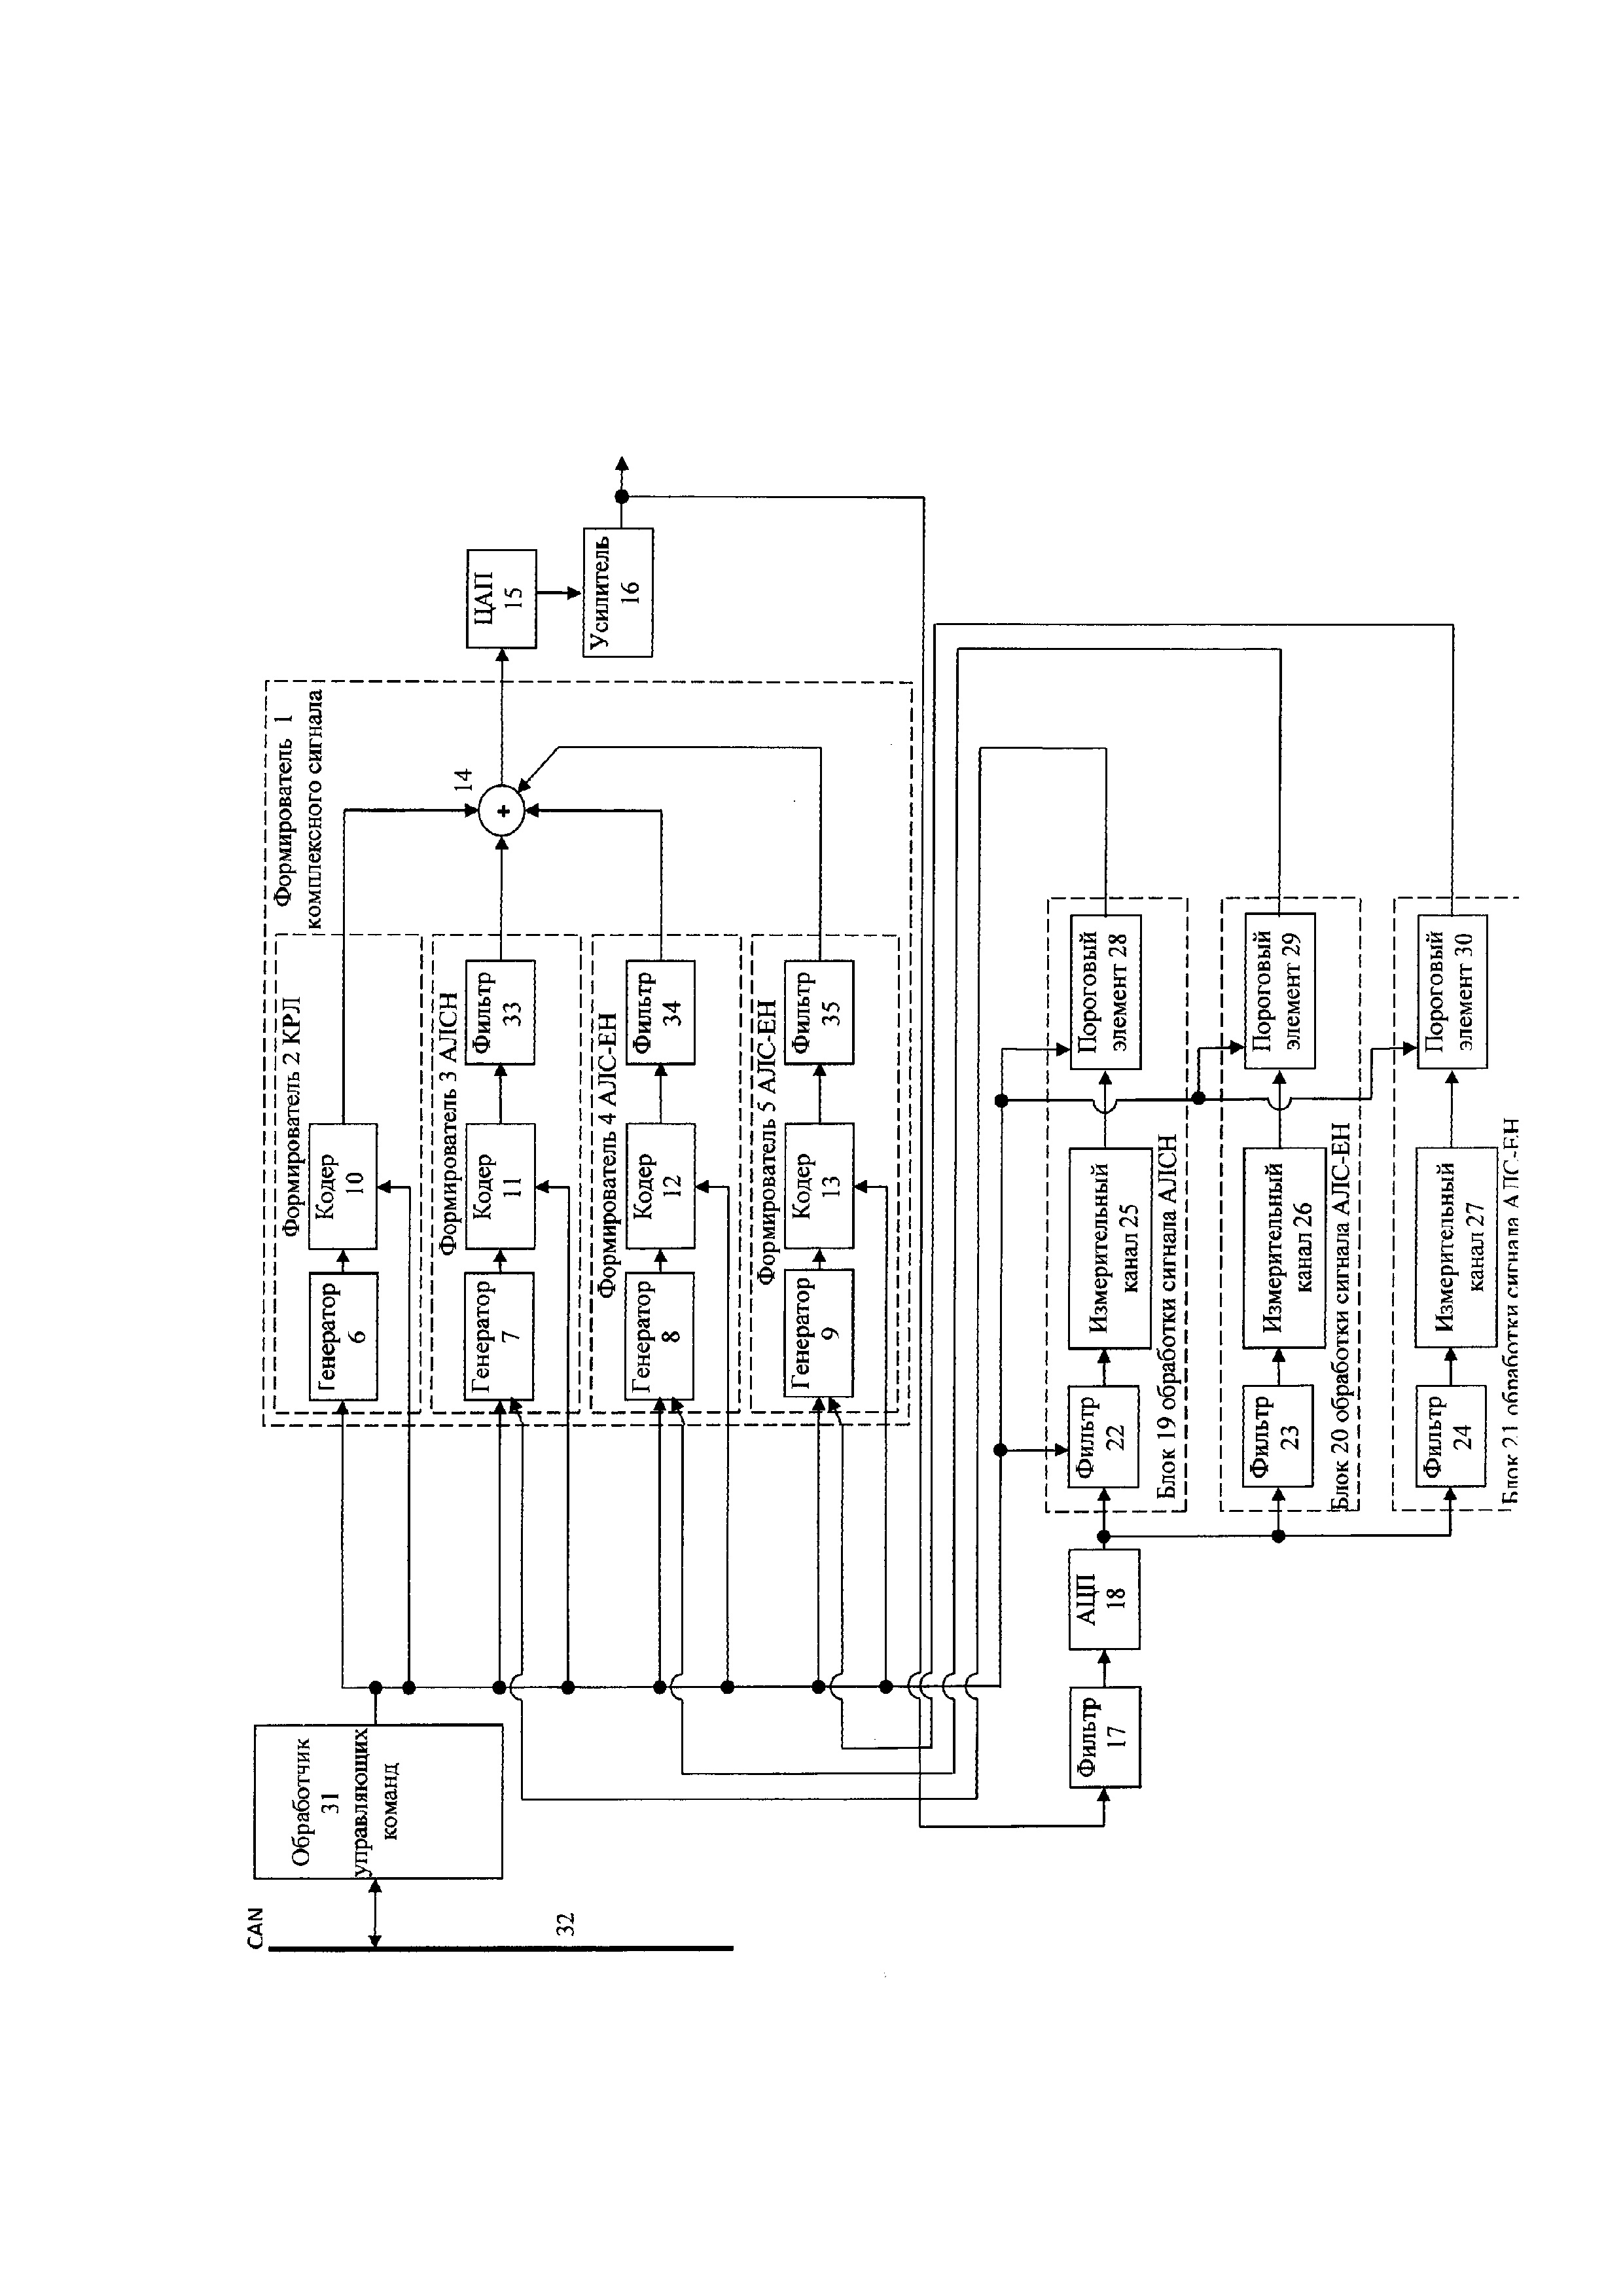 Модуль генератора комплексного сигнала для локомотивной сигнализации